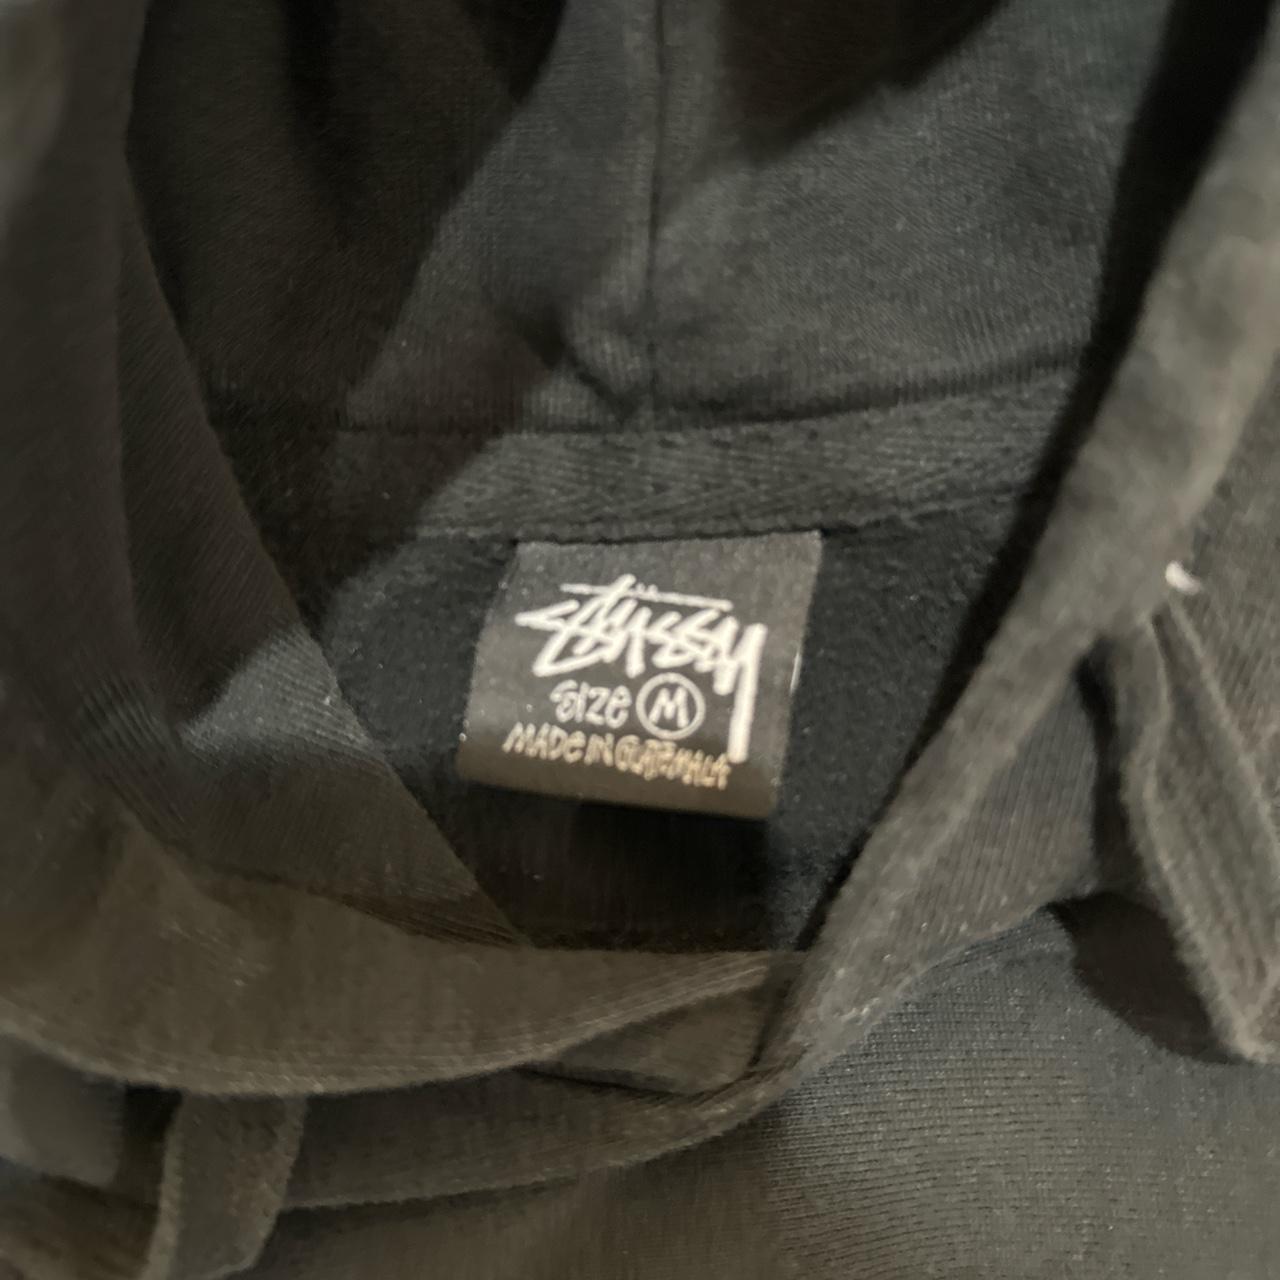 stussy dice hoodie size medium msg before buying - Depop